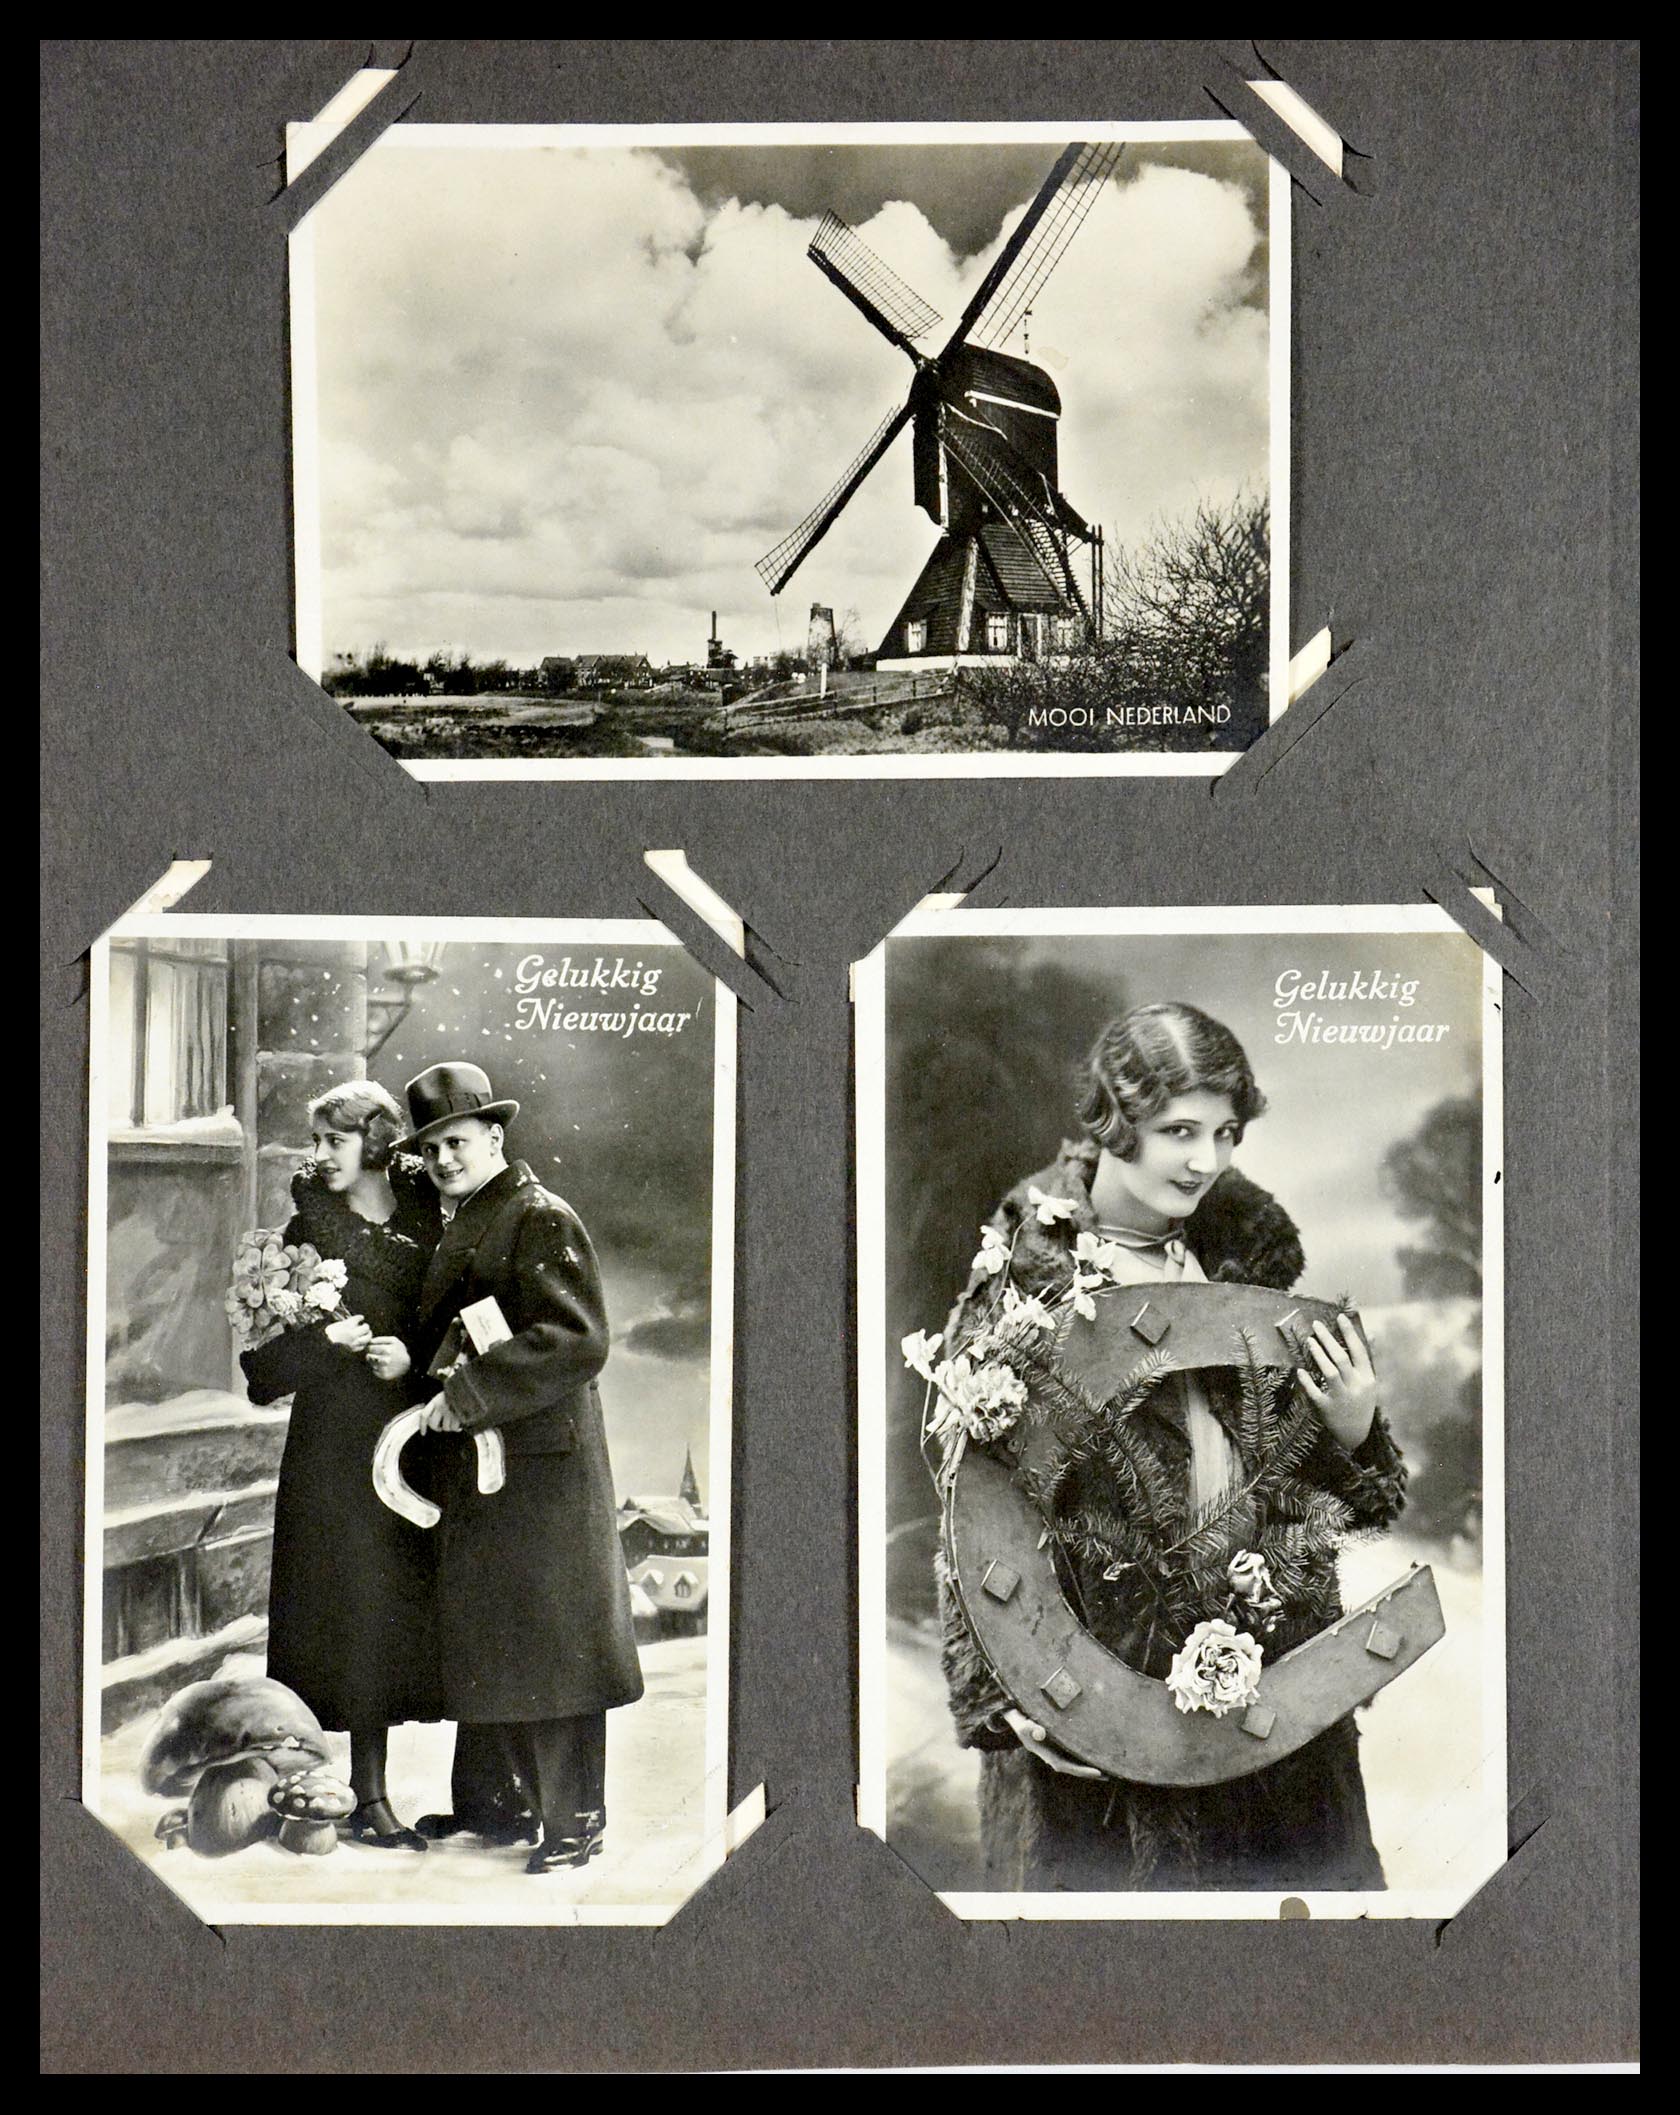 29518 039 - 29518 Nederland ansichtkaarten 1939-1940.